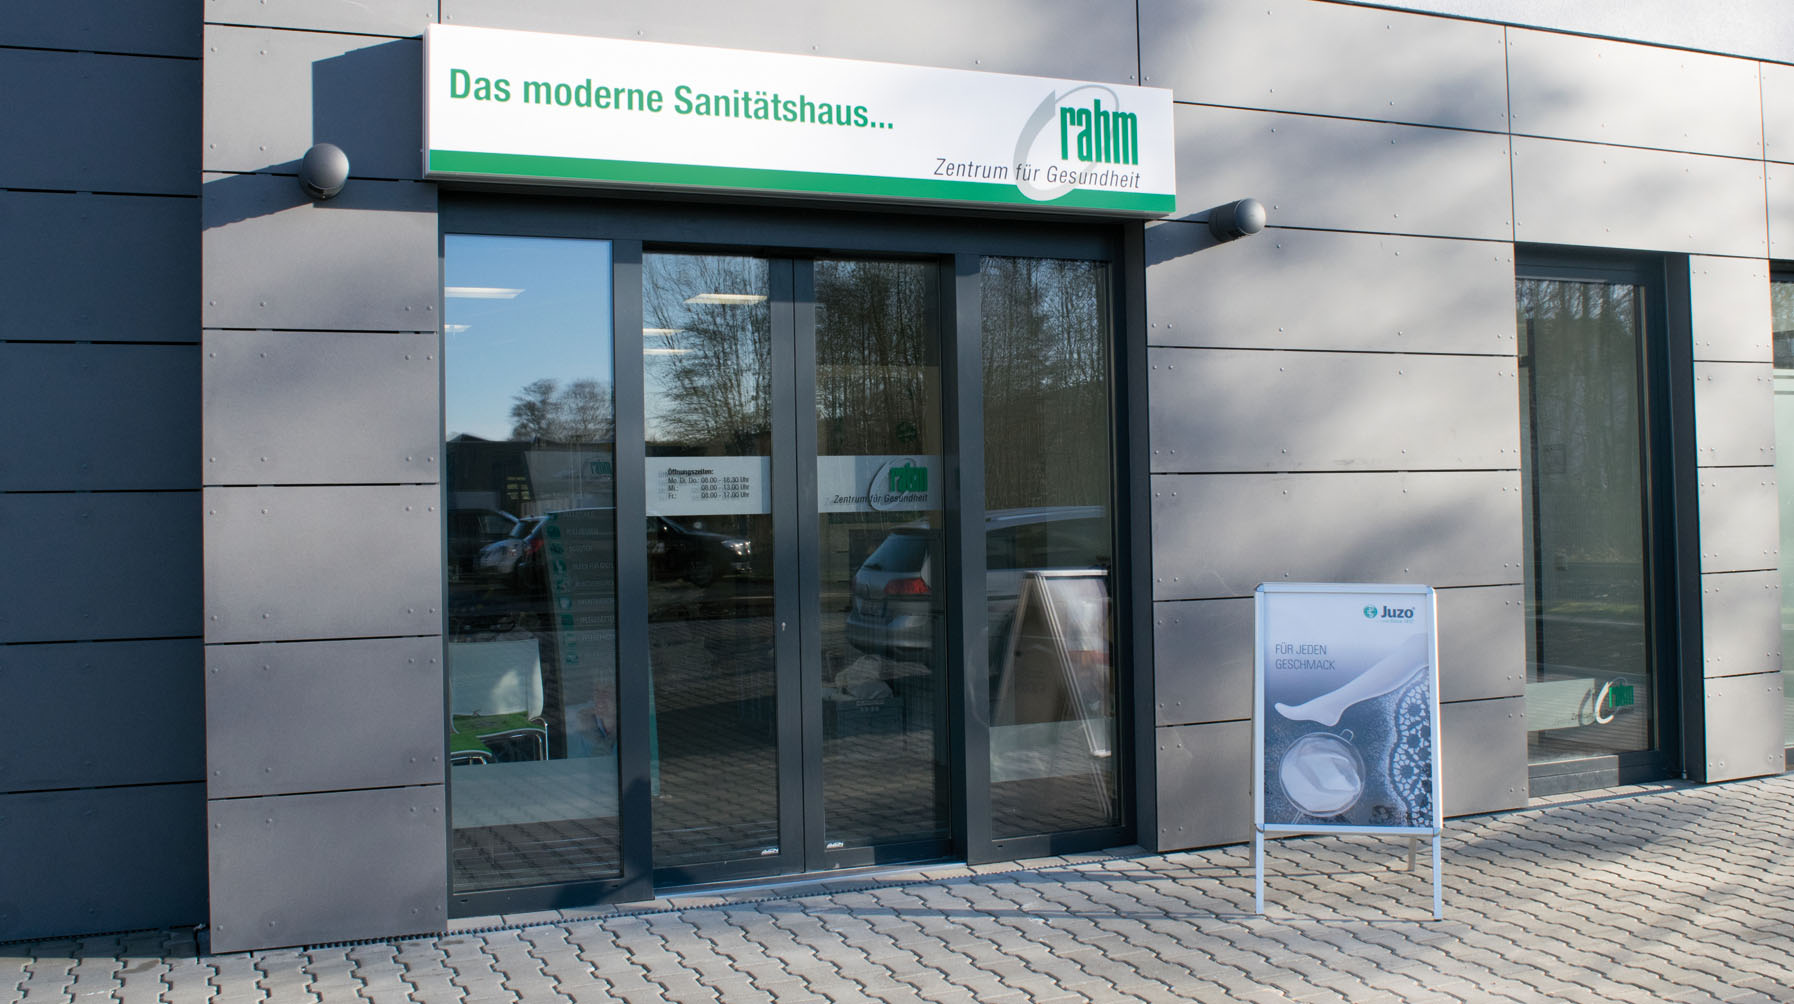 rahm-Zentrum-fuer-Gesundheit_Sanitaetshaus-Neunkirchen